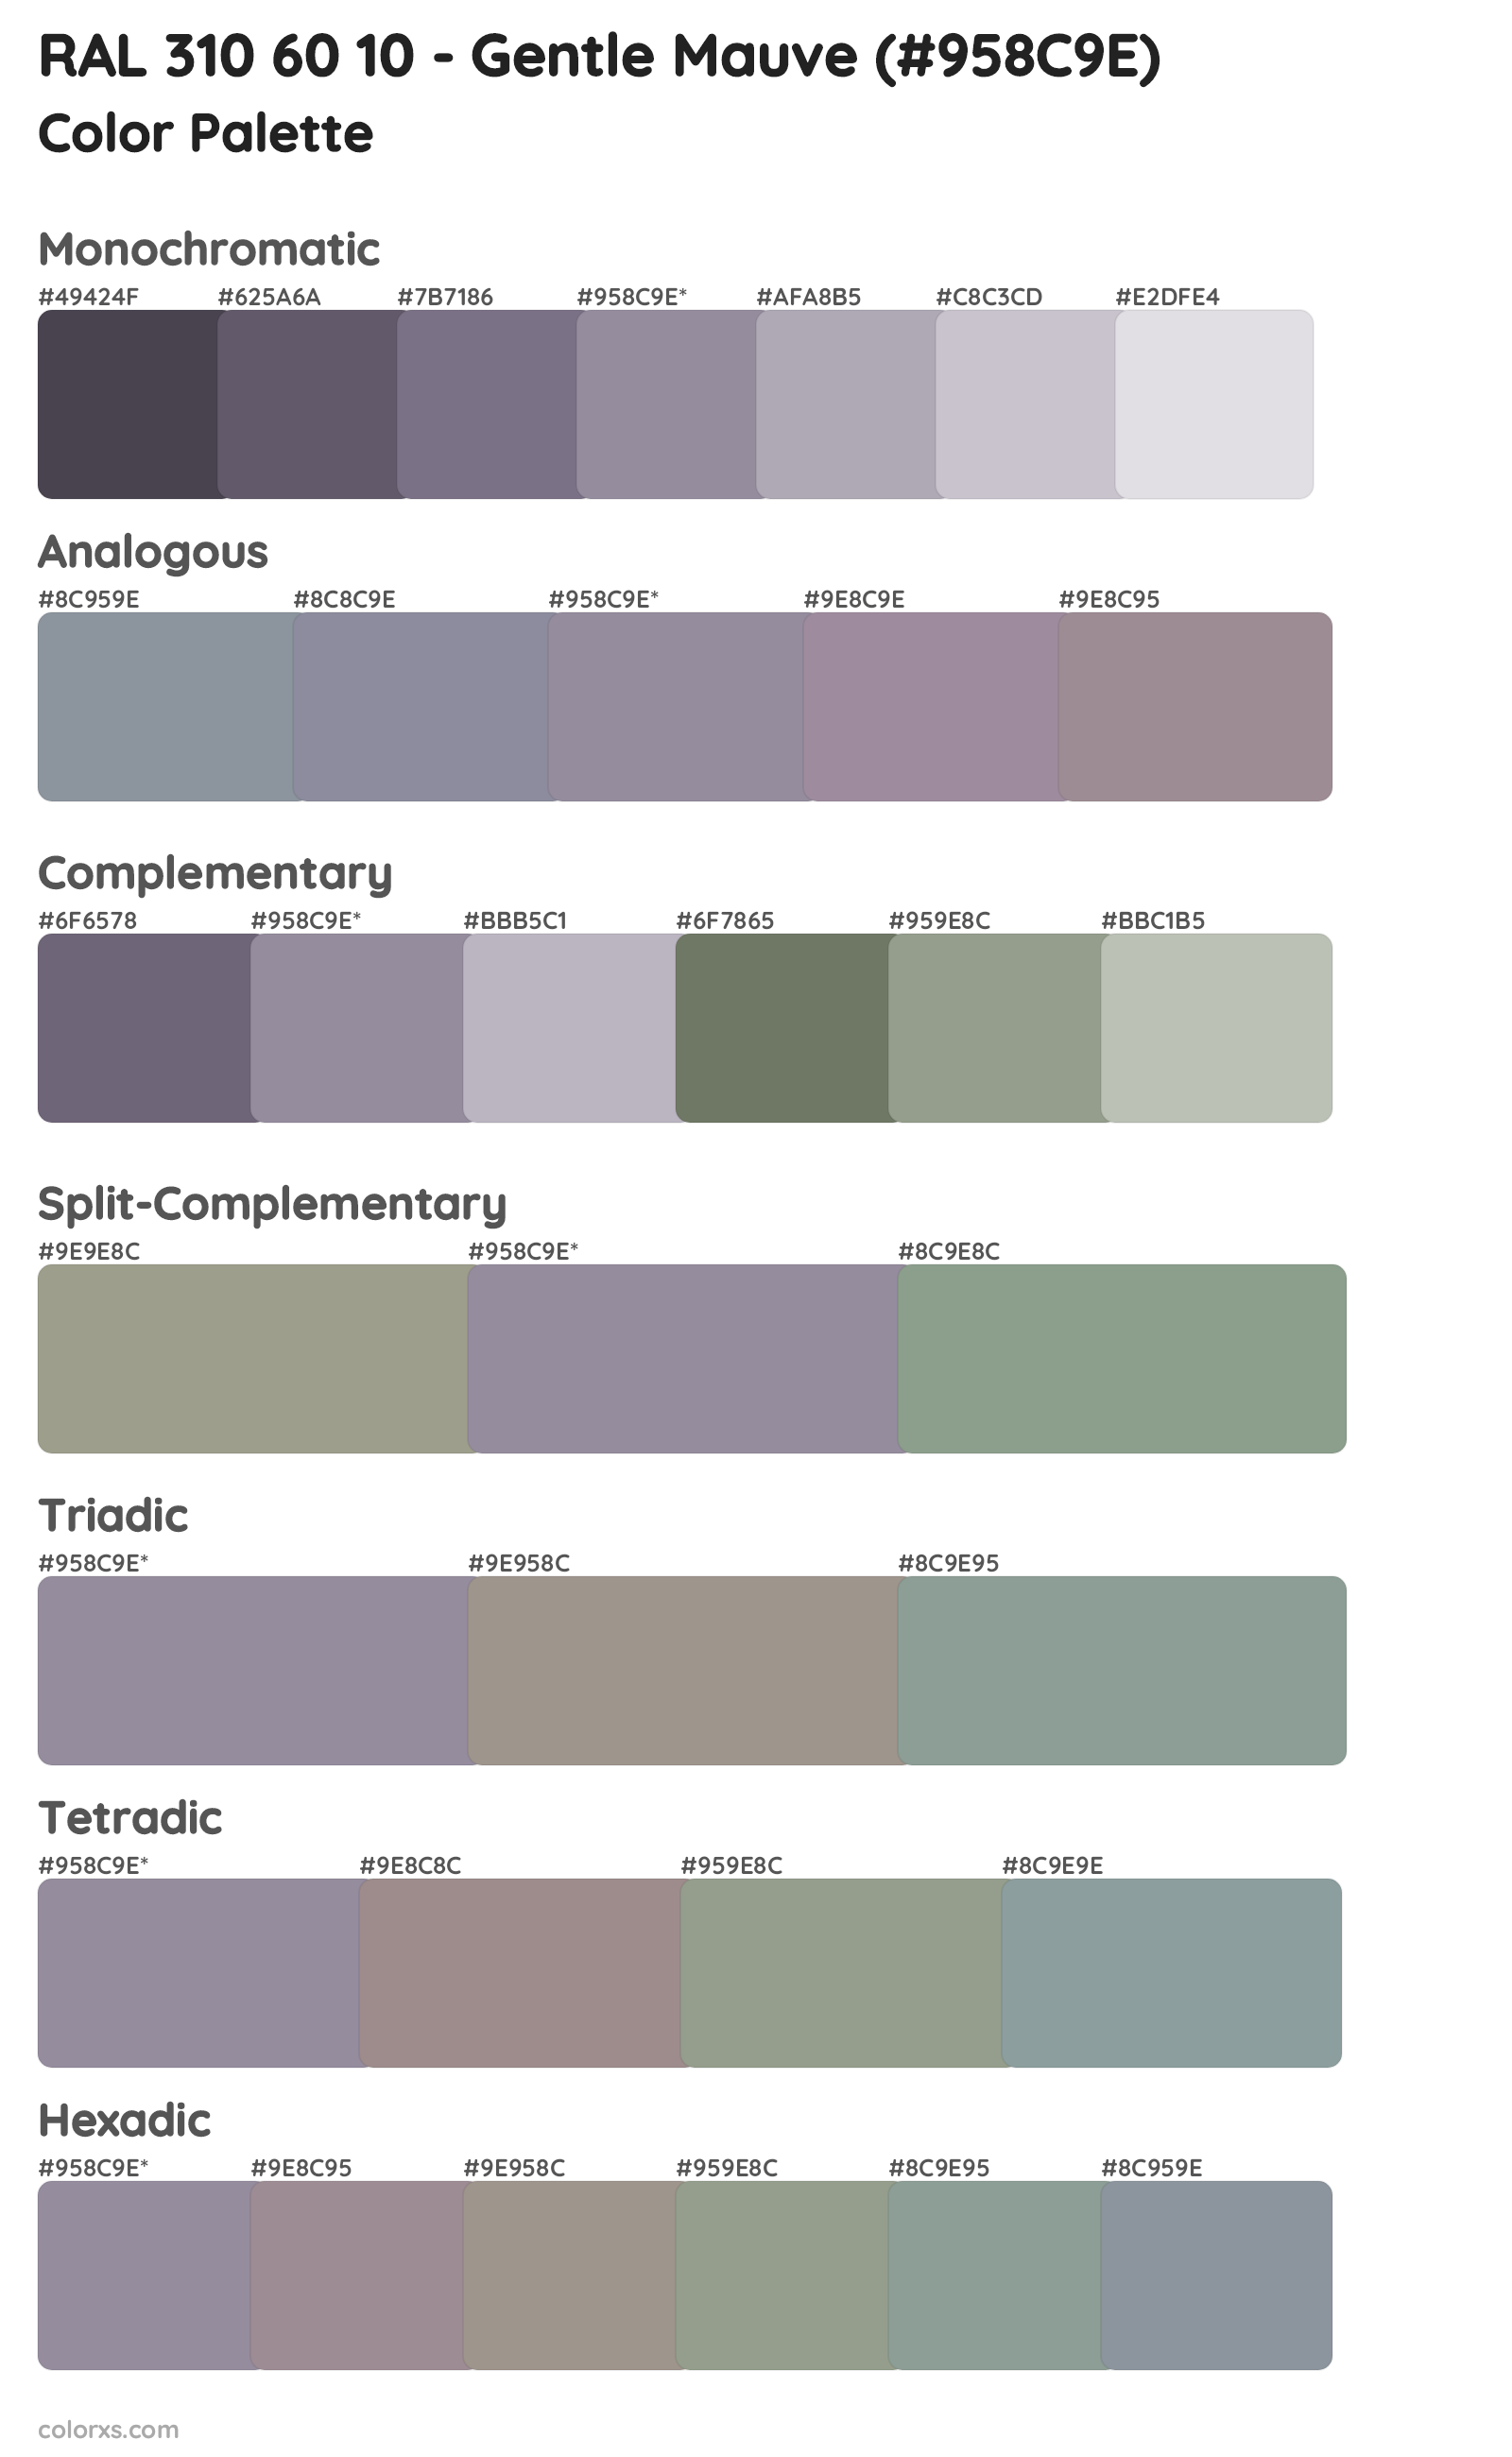 RAL 310 60 10 - Gentle Mauve Color Scheme Palettes